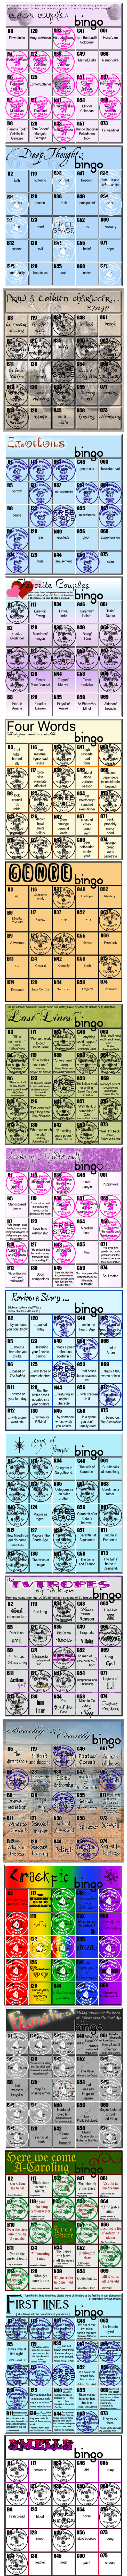 Gwenniel's Bingo Cards